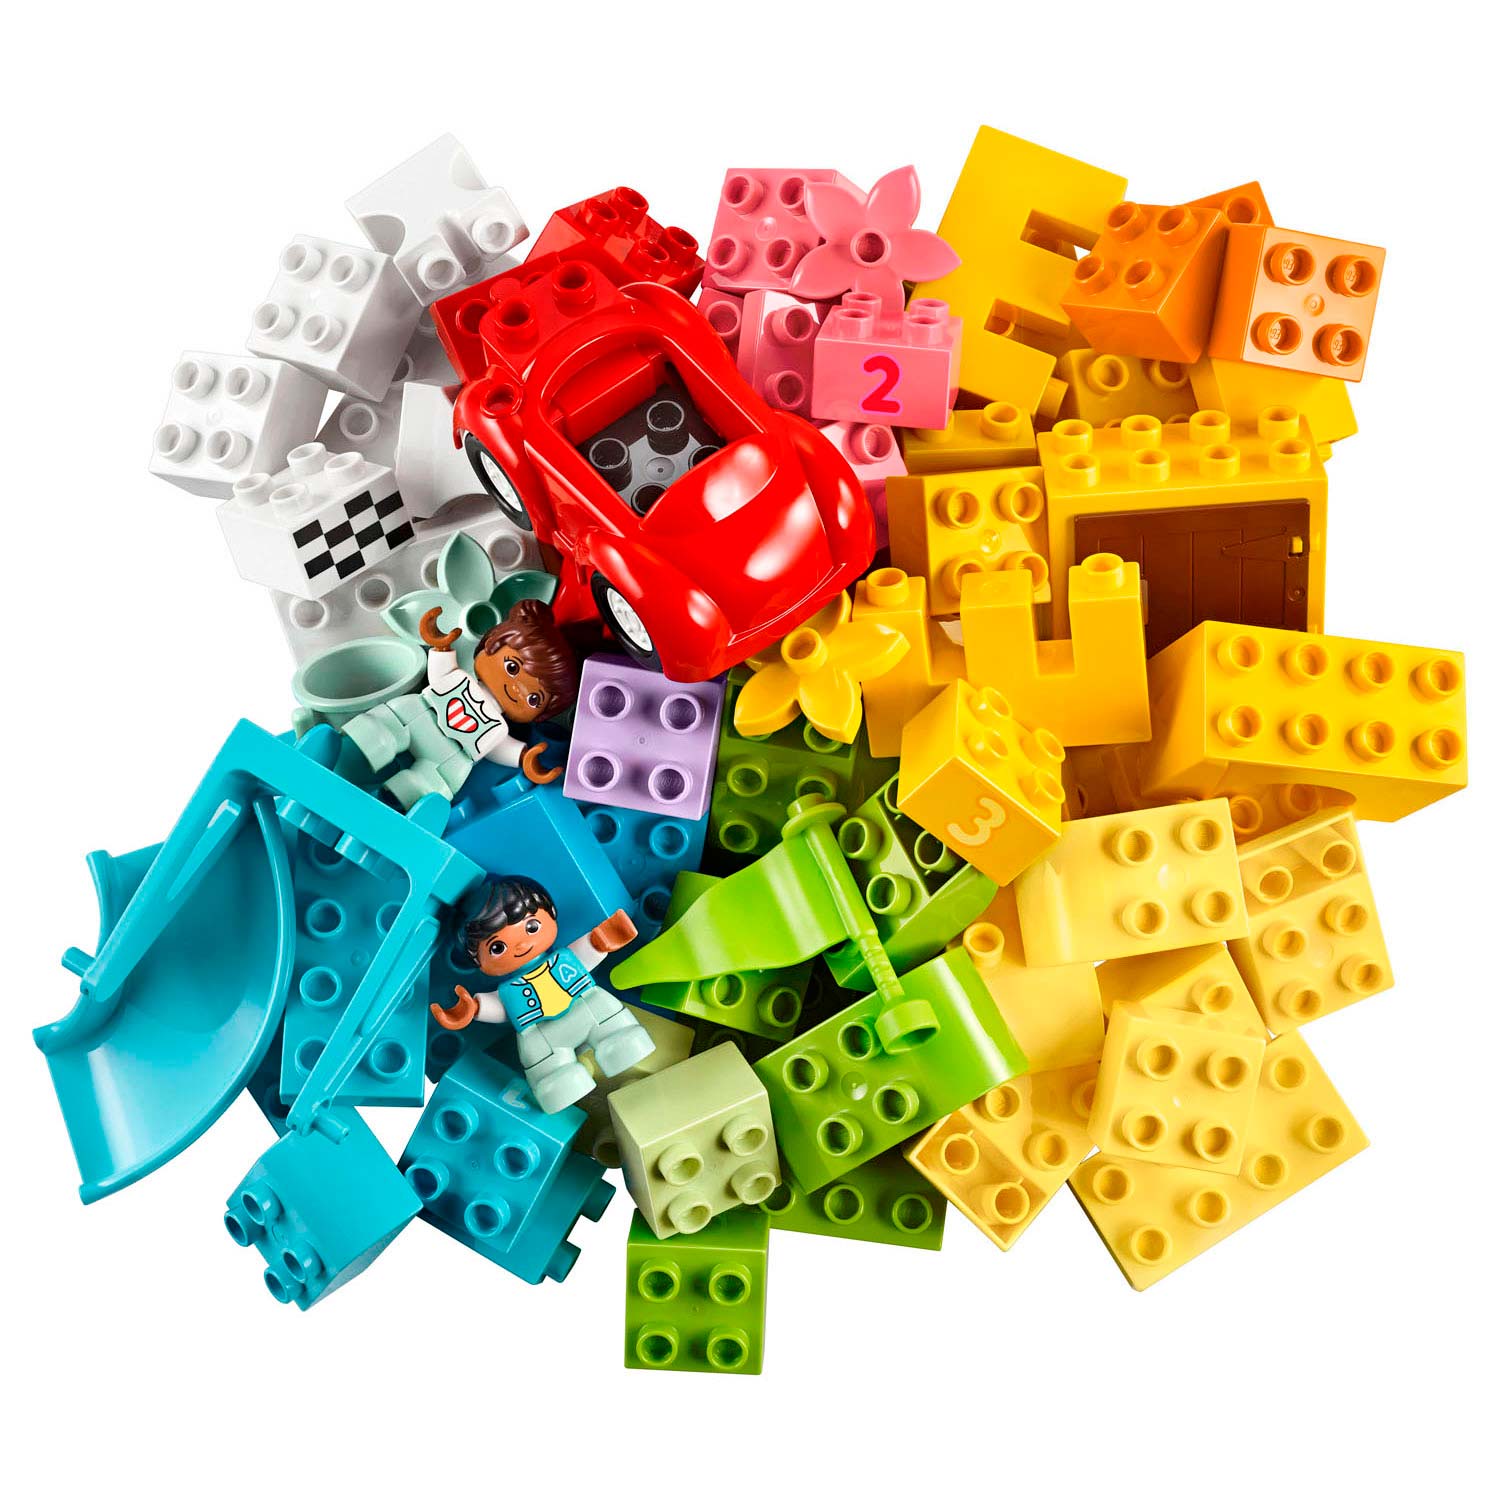 LEGO Duplo 10914 Luxus-Aufbewahrungsbox mit Bausteinen